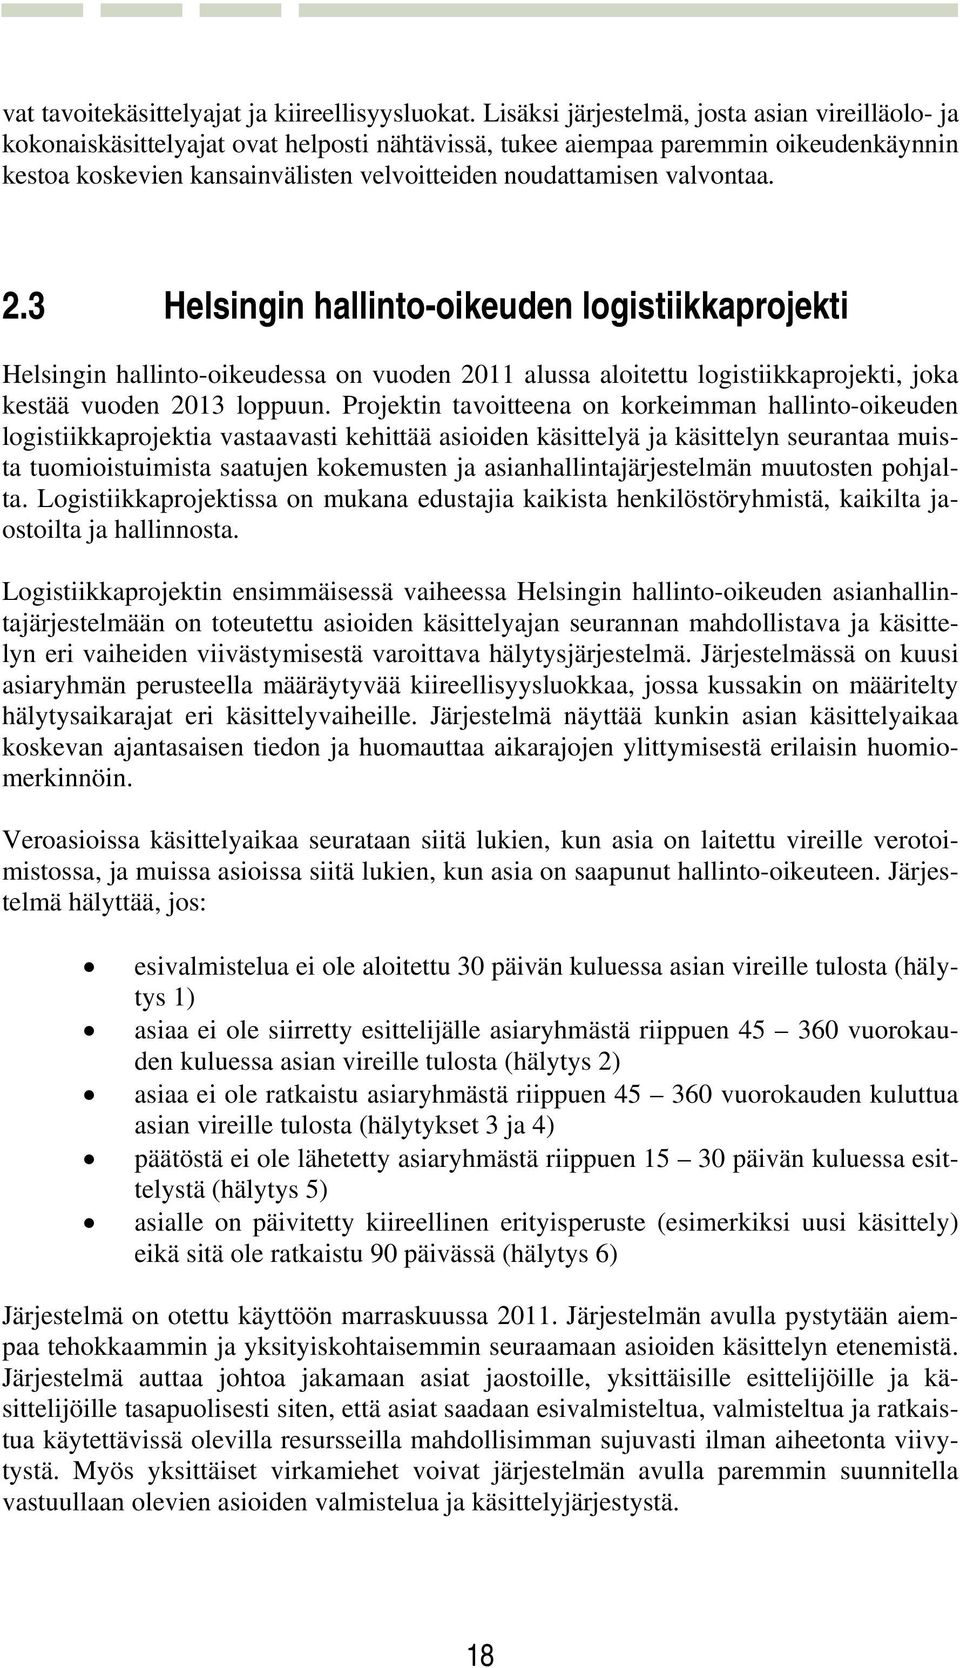 valvontaa. 2.3 Helsingin hallinto-oikeuden logistiikkaprojekti Helsingin hallinto-oikeudessa on vuoden 2011 alussa aloitettu logistiikkaprojekti, joka kestää vuoden 2013 loppuun.